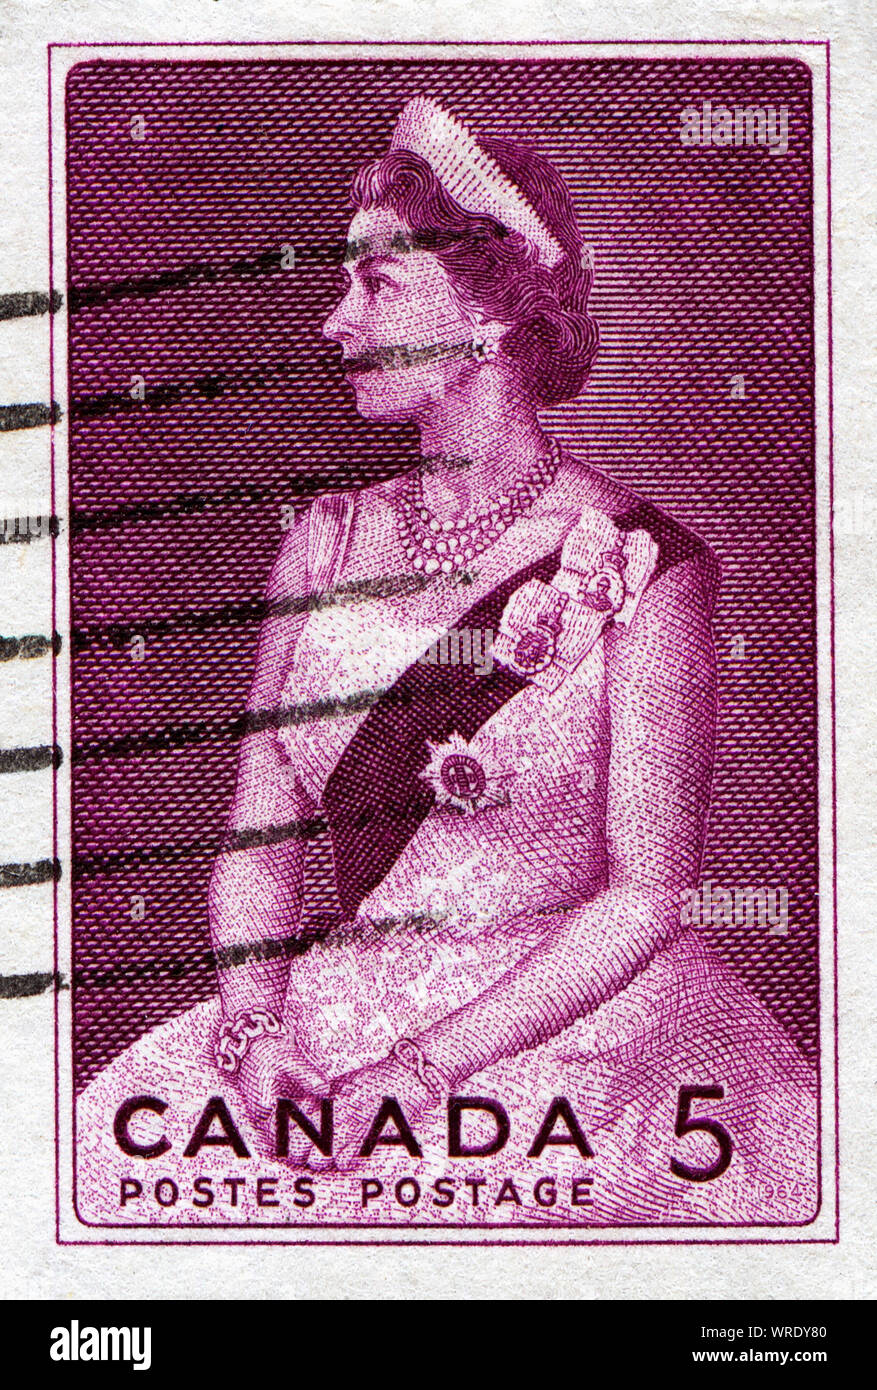 La reine Elizabeth II le timbre vintage Banque D'Images